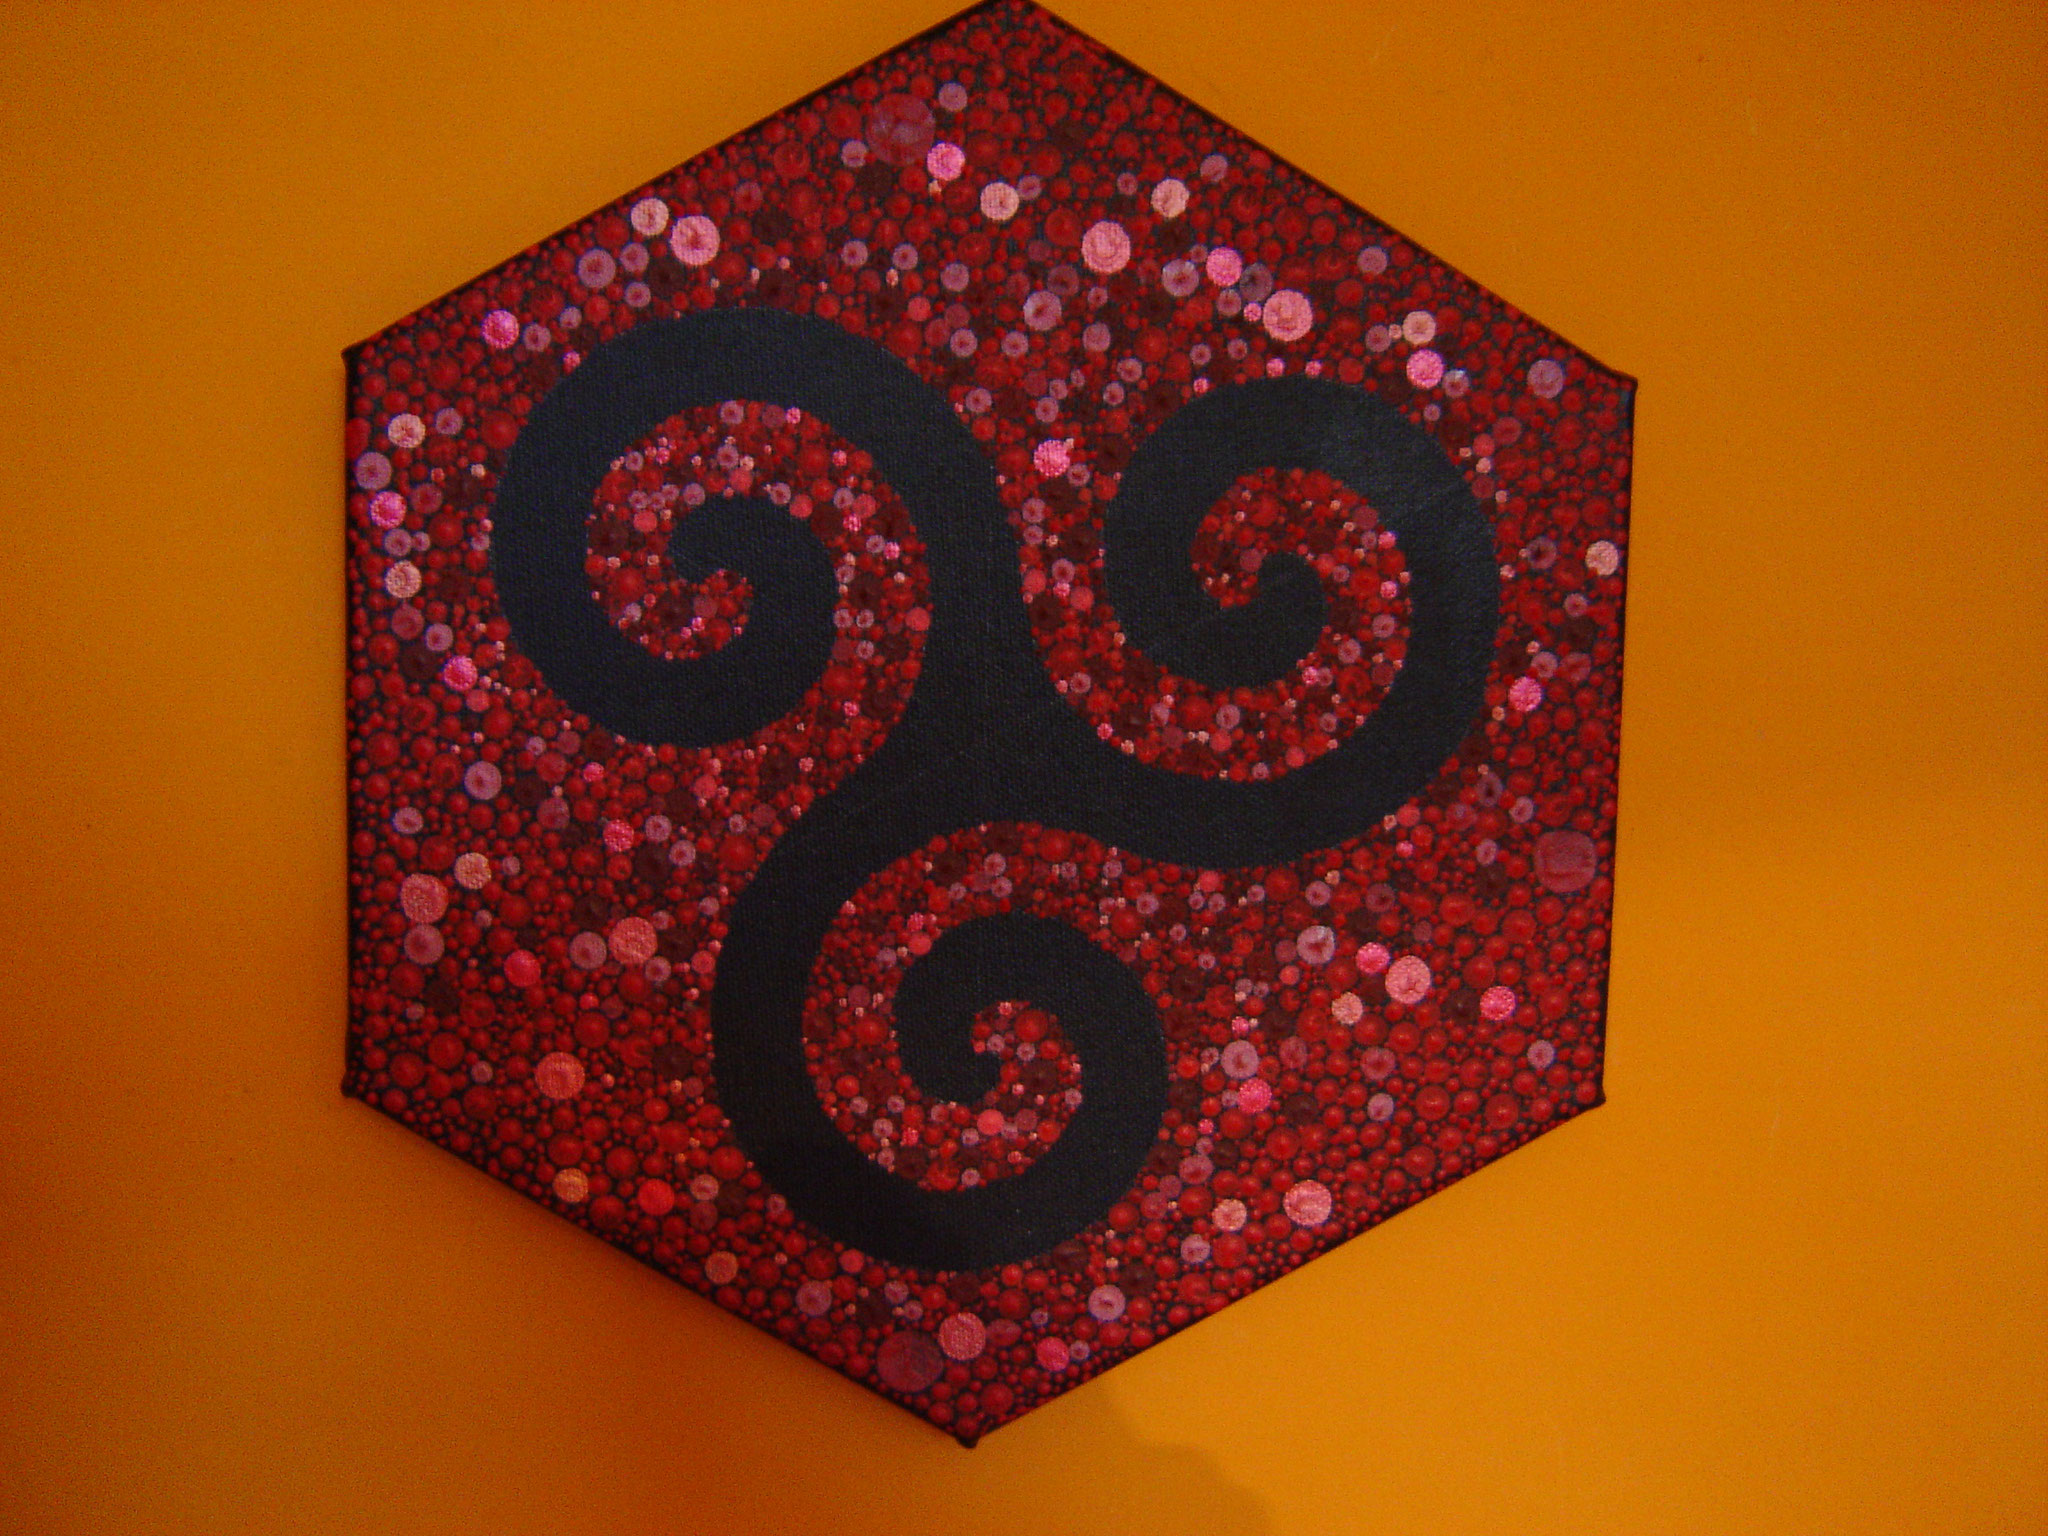 Wurzeln - Hexagon 30 cm Durchmesser